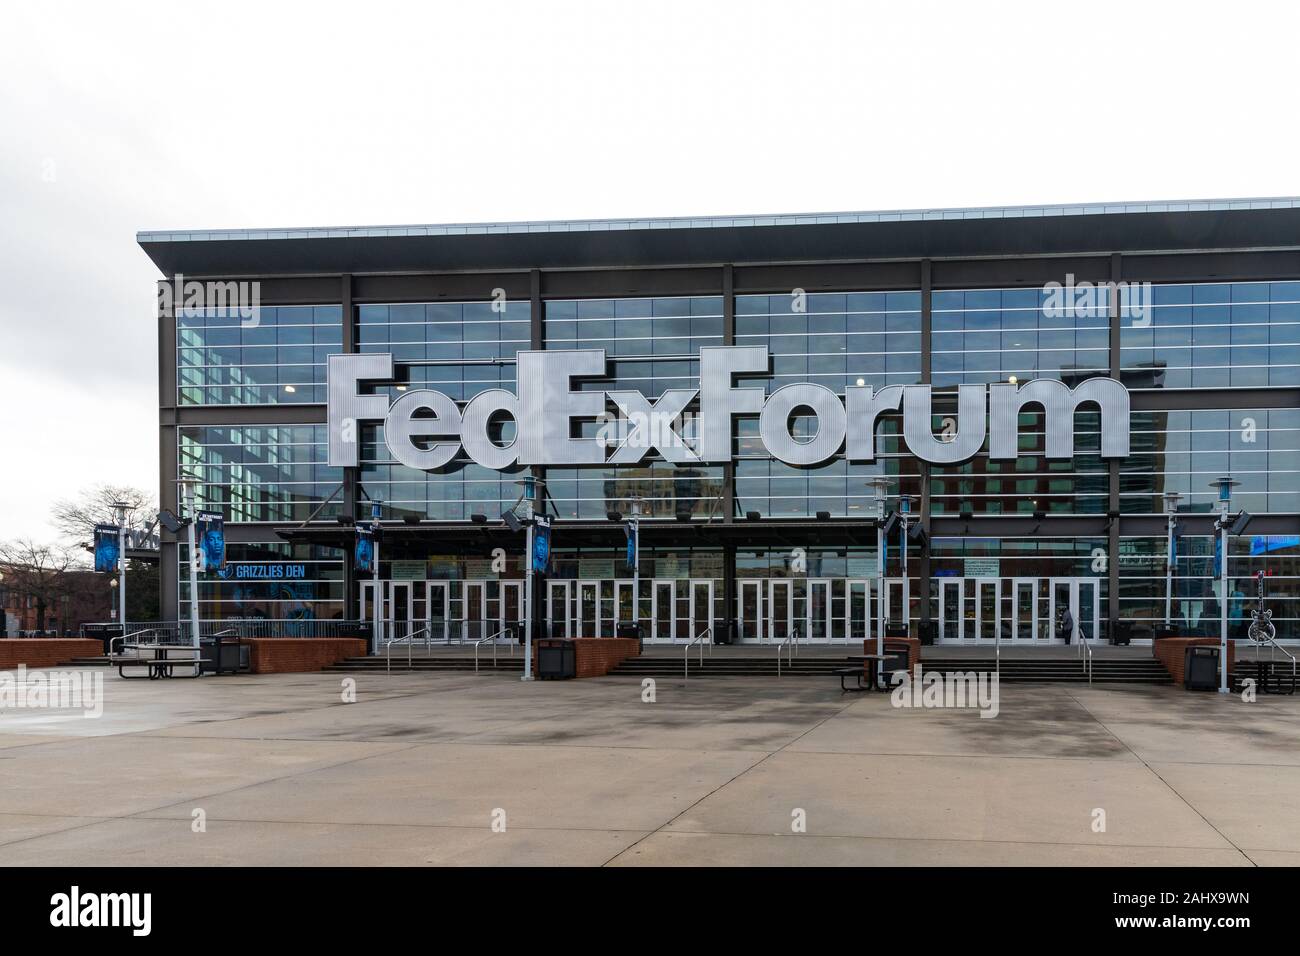 Grizzlies Den Team Store at FedExForum Blow-Out Sale